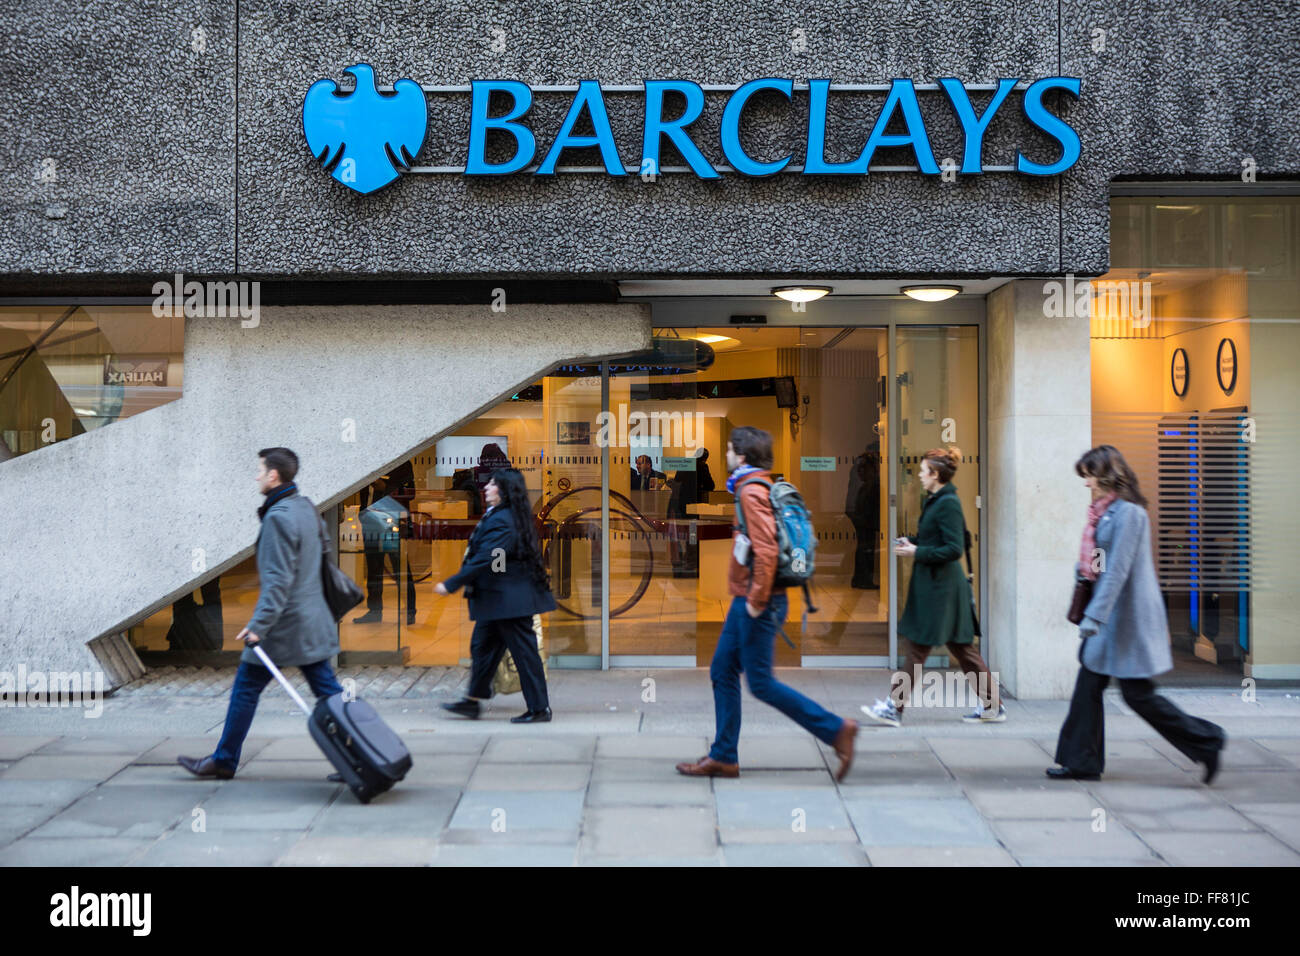 British pedoni a piedi passato a Barclays Bank in Moorgate, Londra, Regno Unito. Barclays plc è una multinazionale britannica bancario e finanziario della società di servizi con sede a Londra, è la settima più grande banca mondiale. La banca è stata associata con tante polemiche tra cui l'evasione fiscale e grandi bonus. Foto Stock